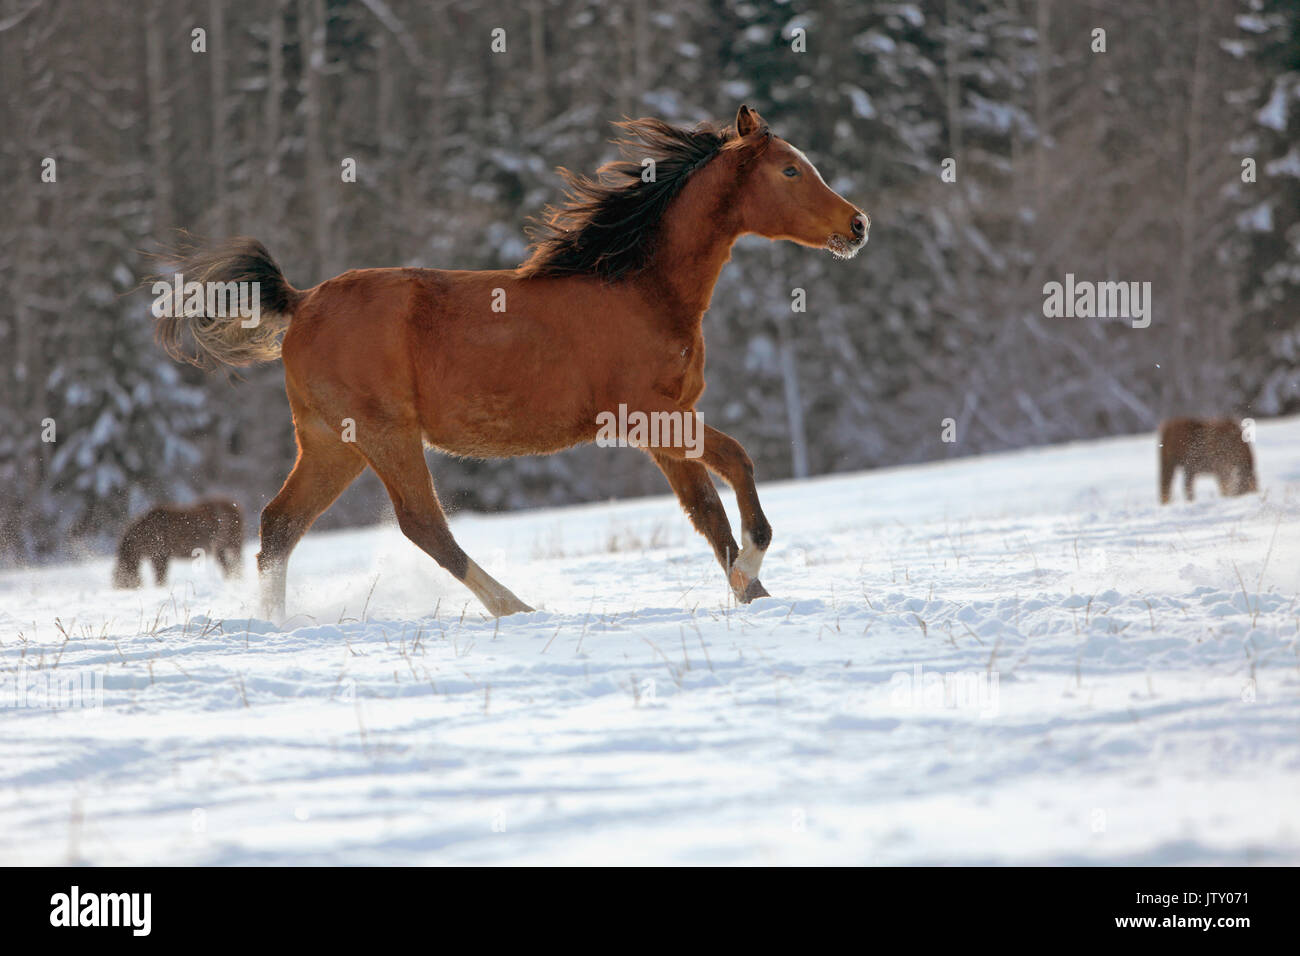 Baie de race course de chevaux arabes dans le champ sur la neige fraîche Banque D'Images